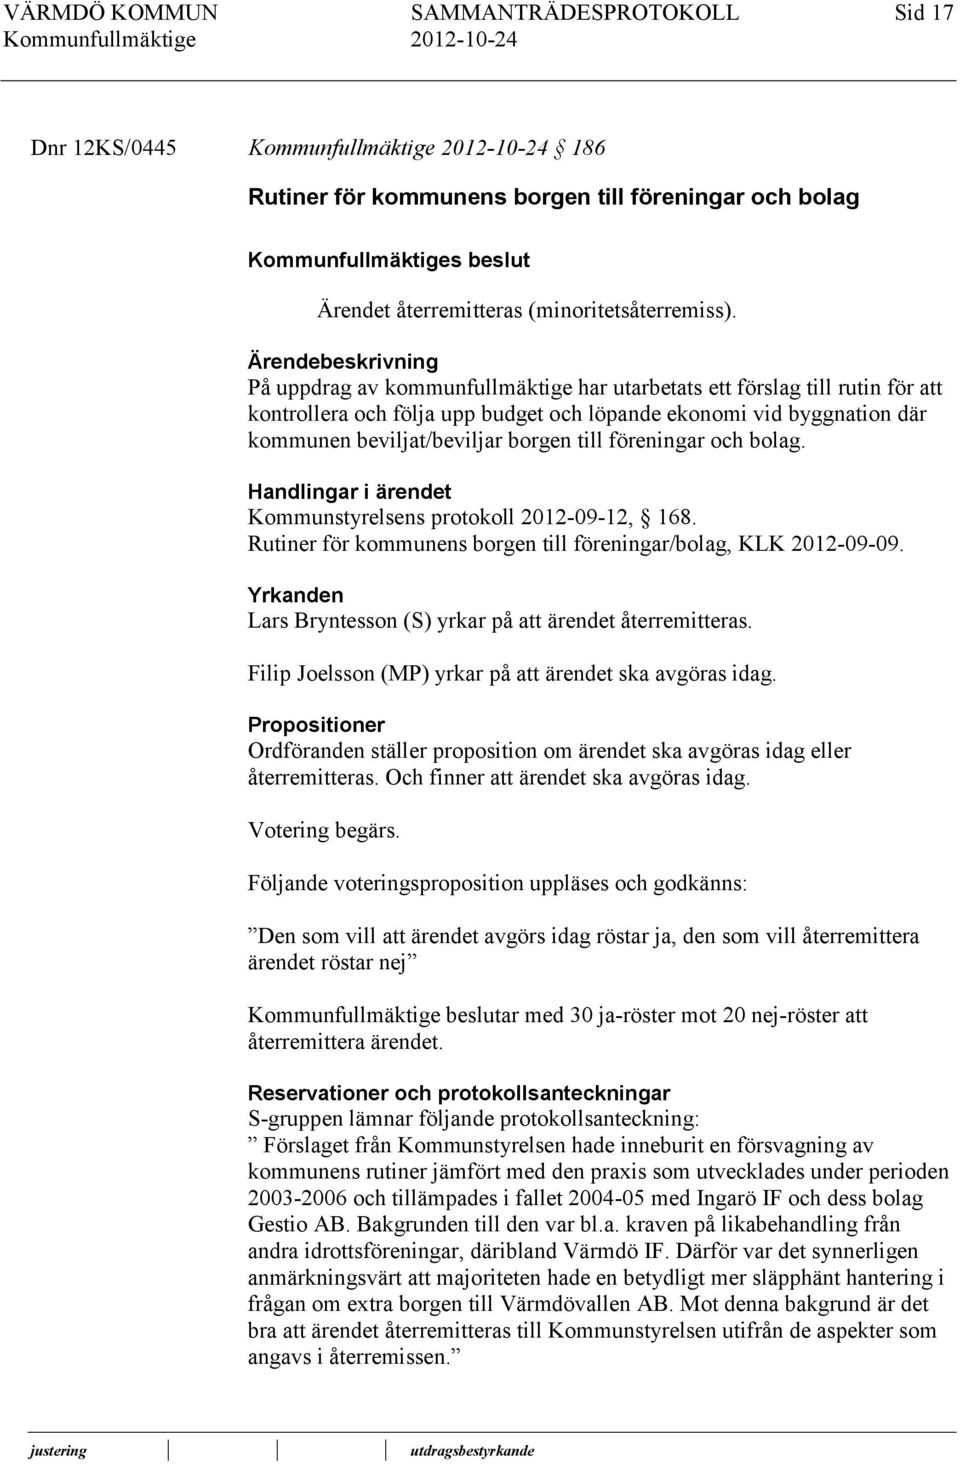 borgen till föreningar och bolag. Handlingar i ärendet Kommunstyrelsens protokoll 2012-09-12, 168. Rutiner för kommunens borgen till föreningar/bolag, KLK 2012-09-09.